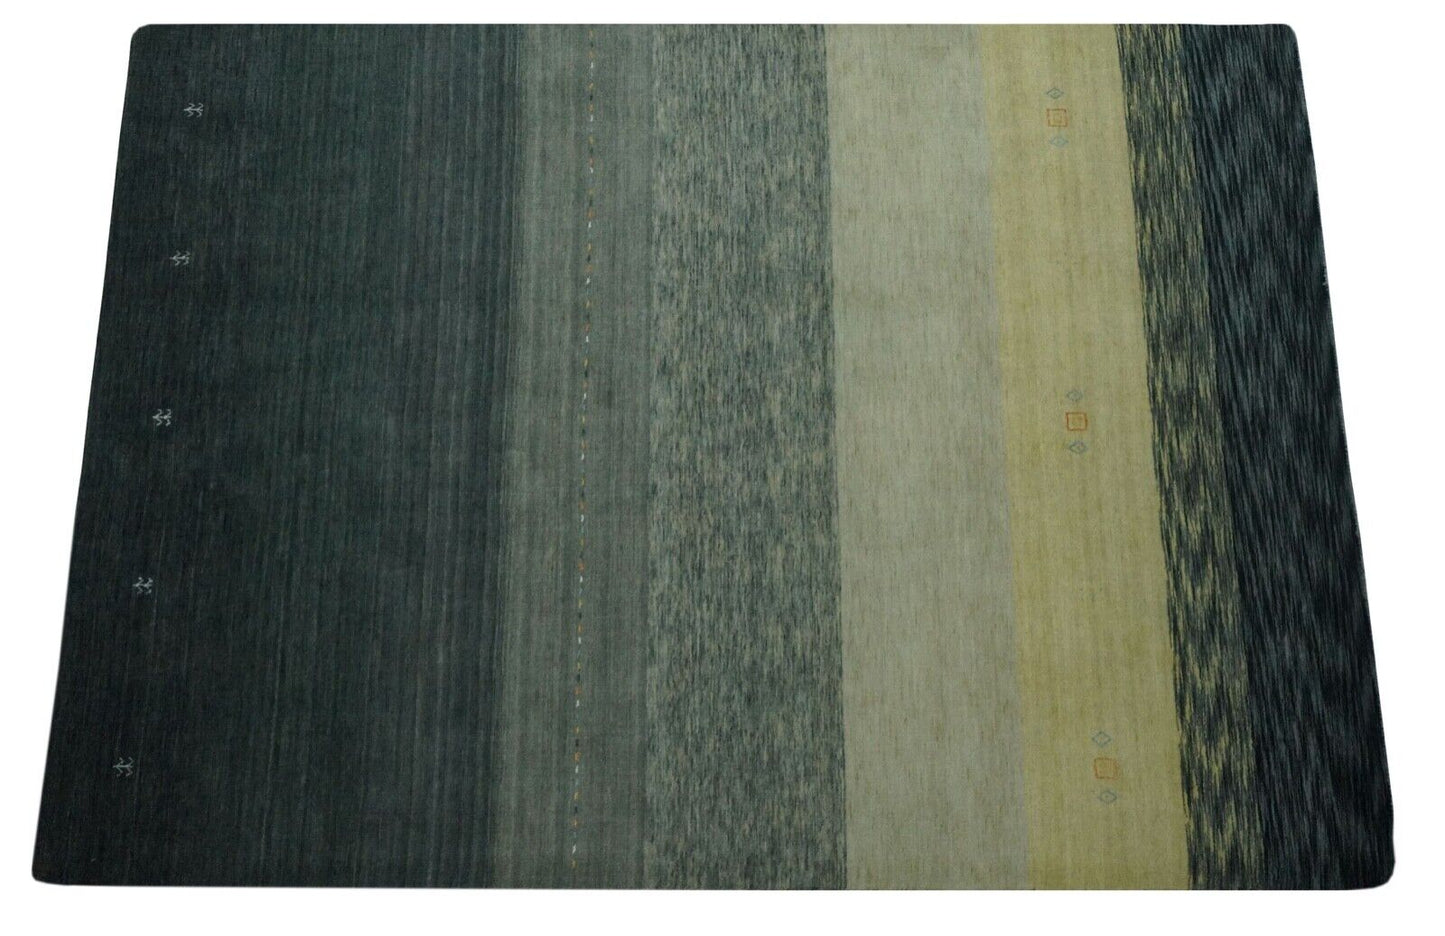 Gabbeh Teppich Grau Beige 100% Wolle 170x240 cm Handgewebt Orientteppich Lr505